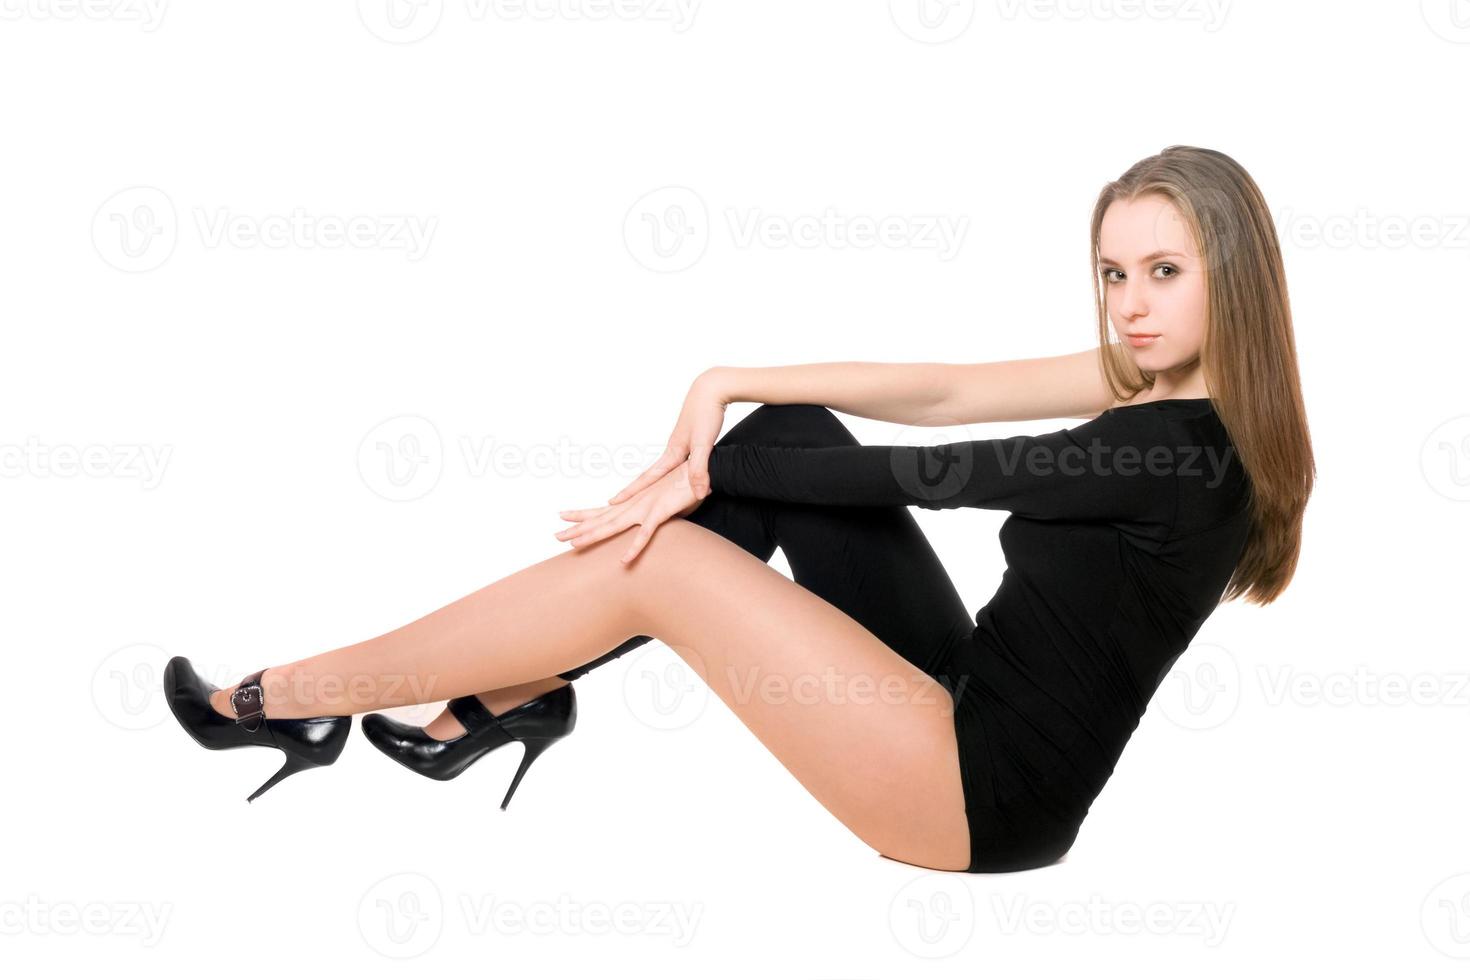 sexig ung kvinna i en svart TÄTSITTANDE kropp kostym foto